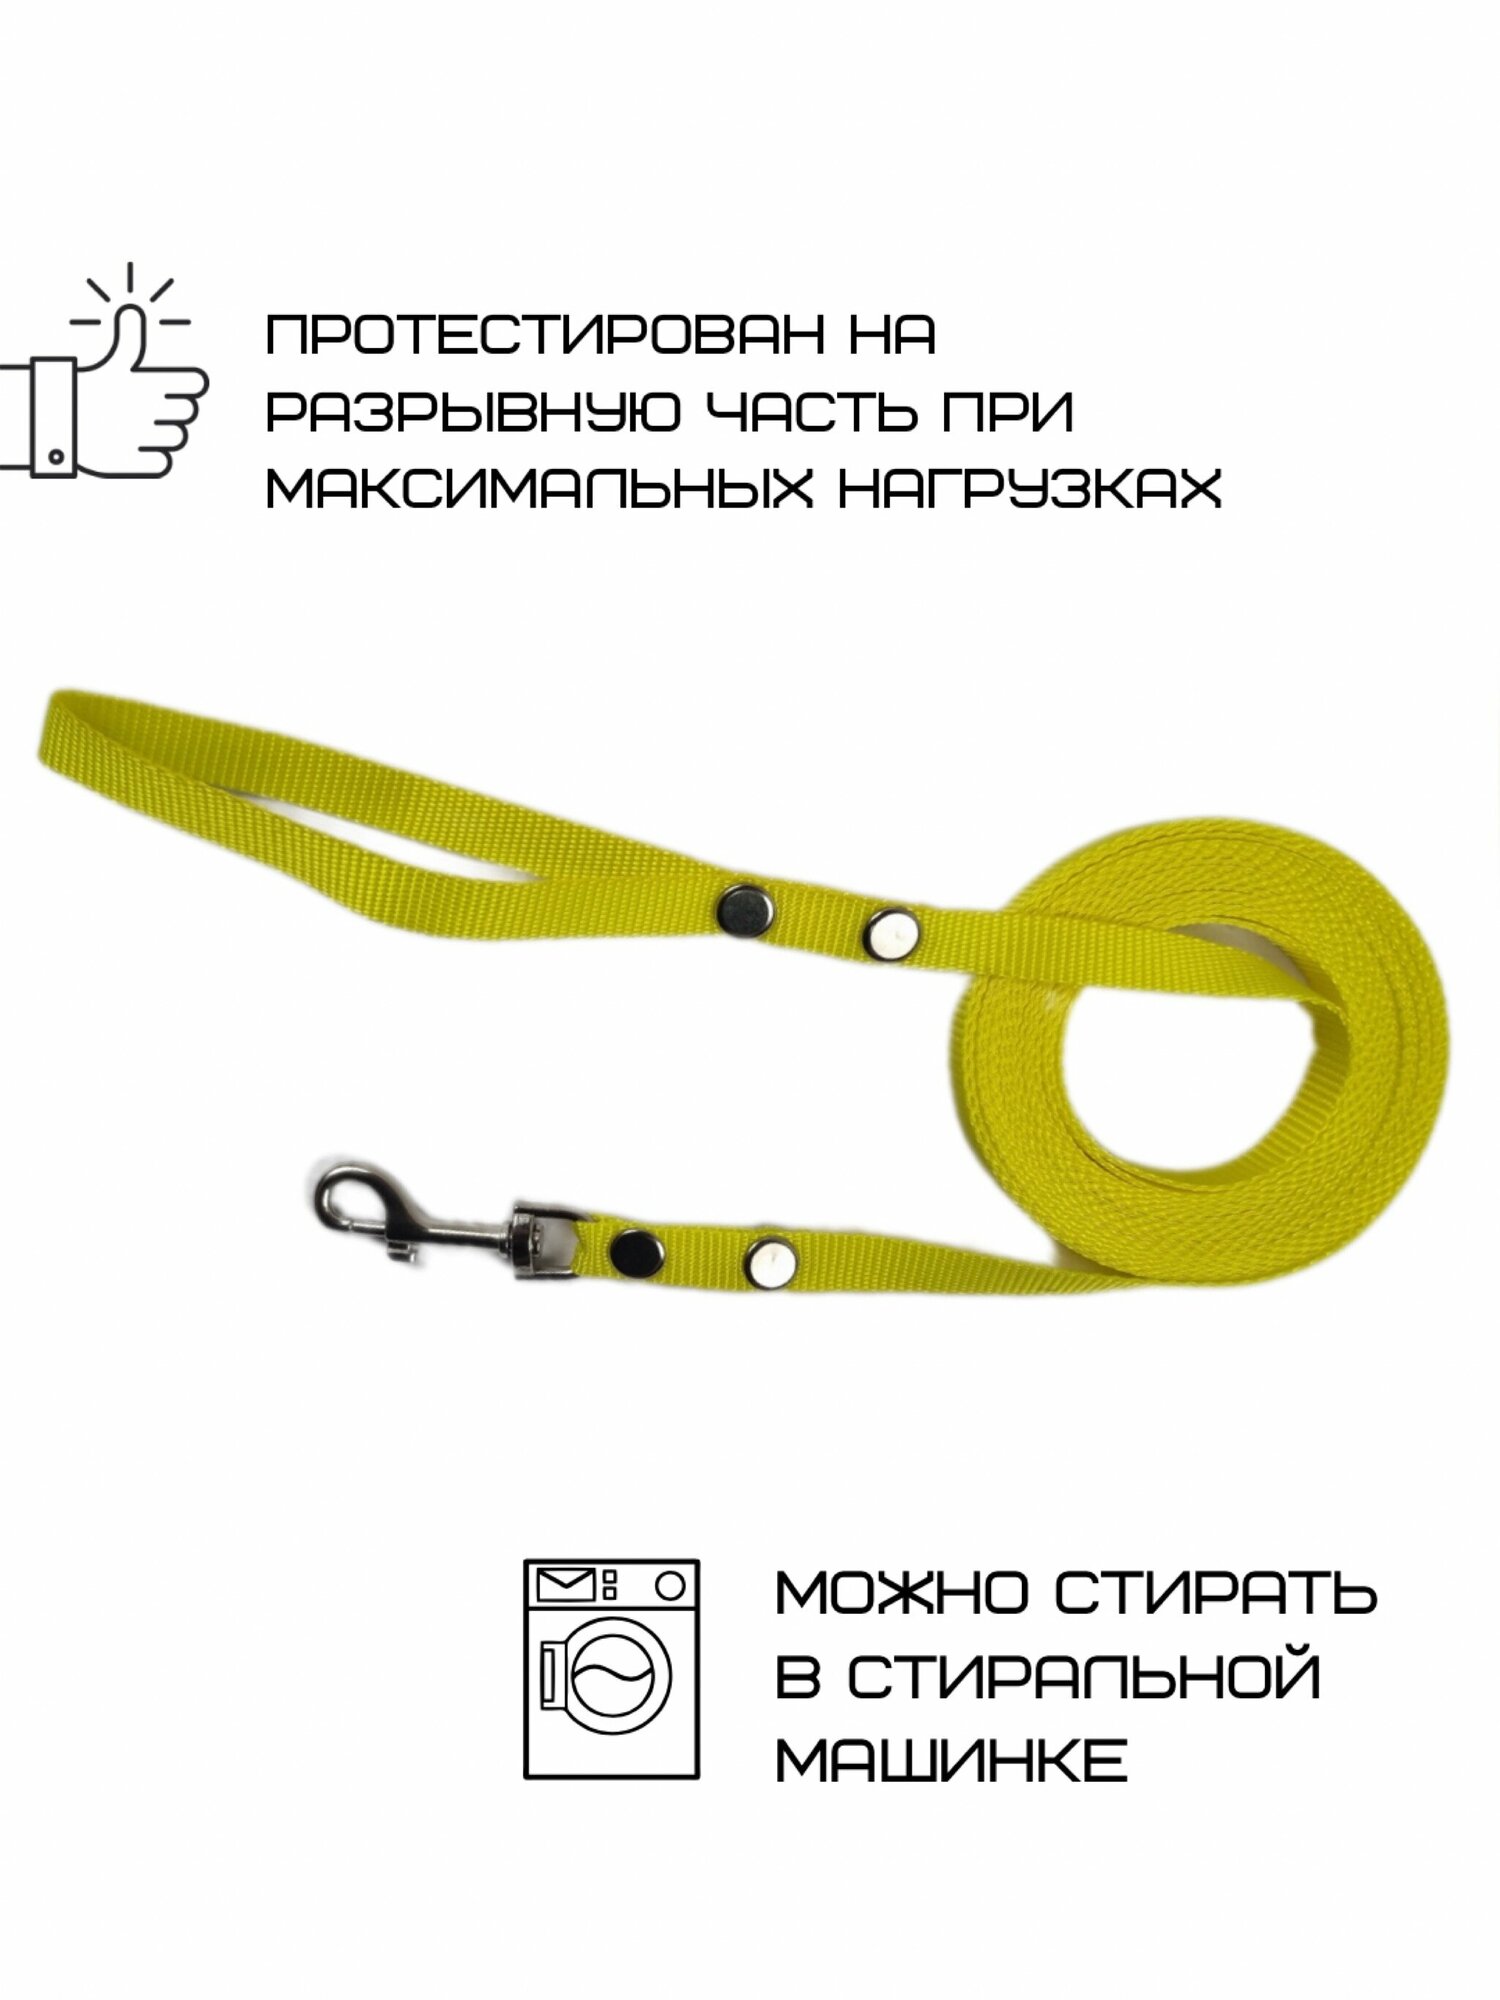 Поводок Хвостатыч для собак нейлоновый классический 5 м х 15 мм (Желтый)